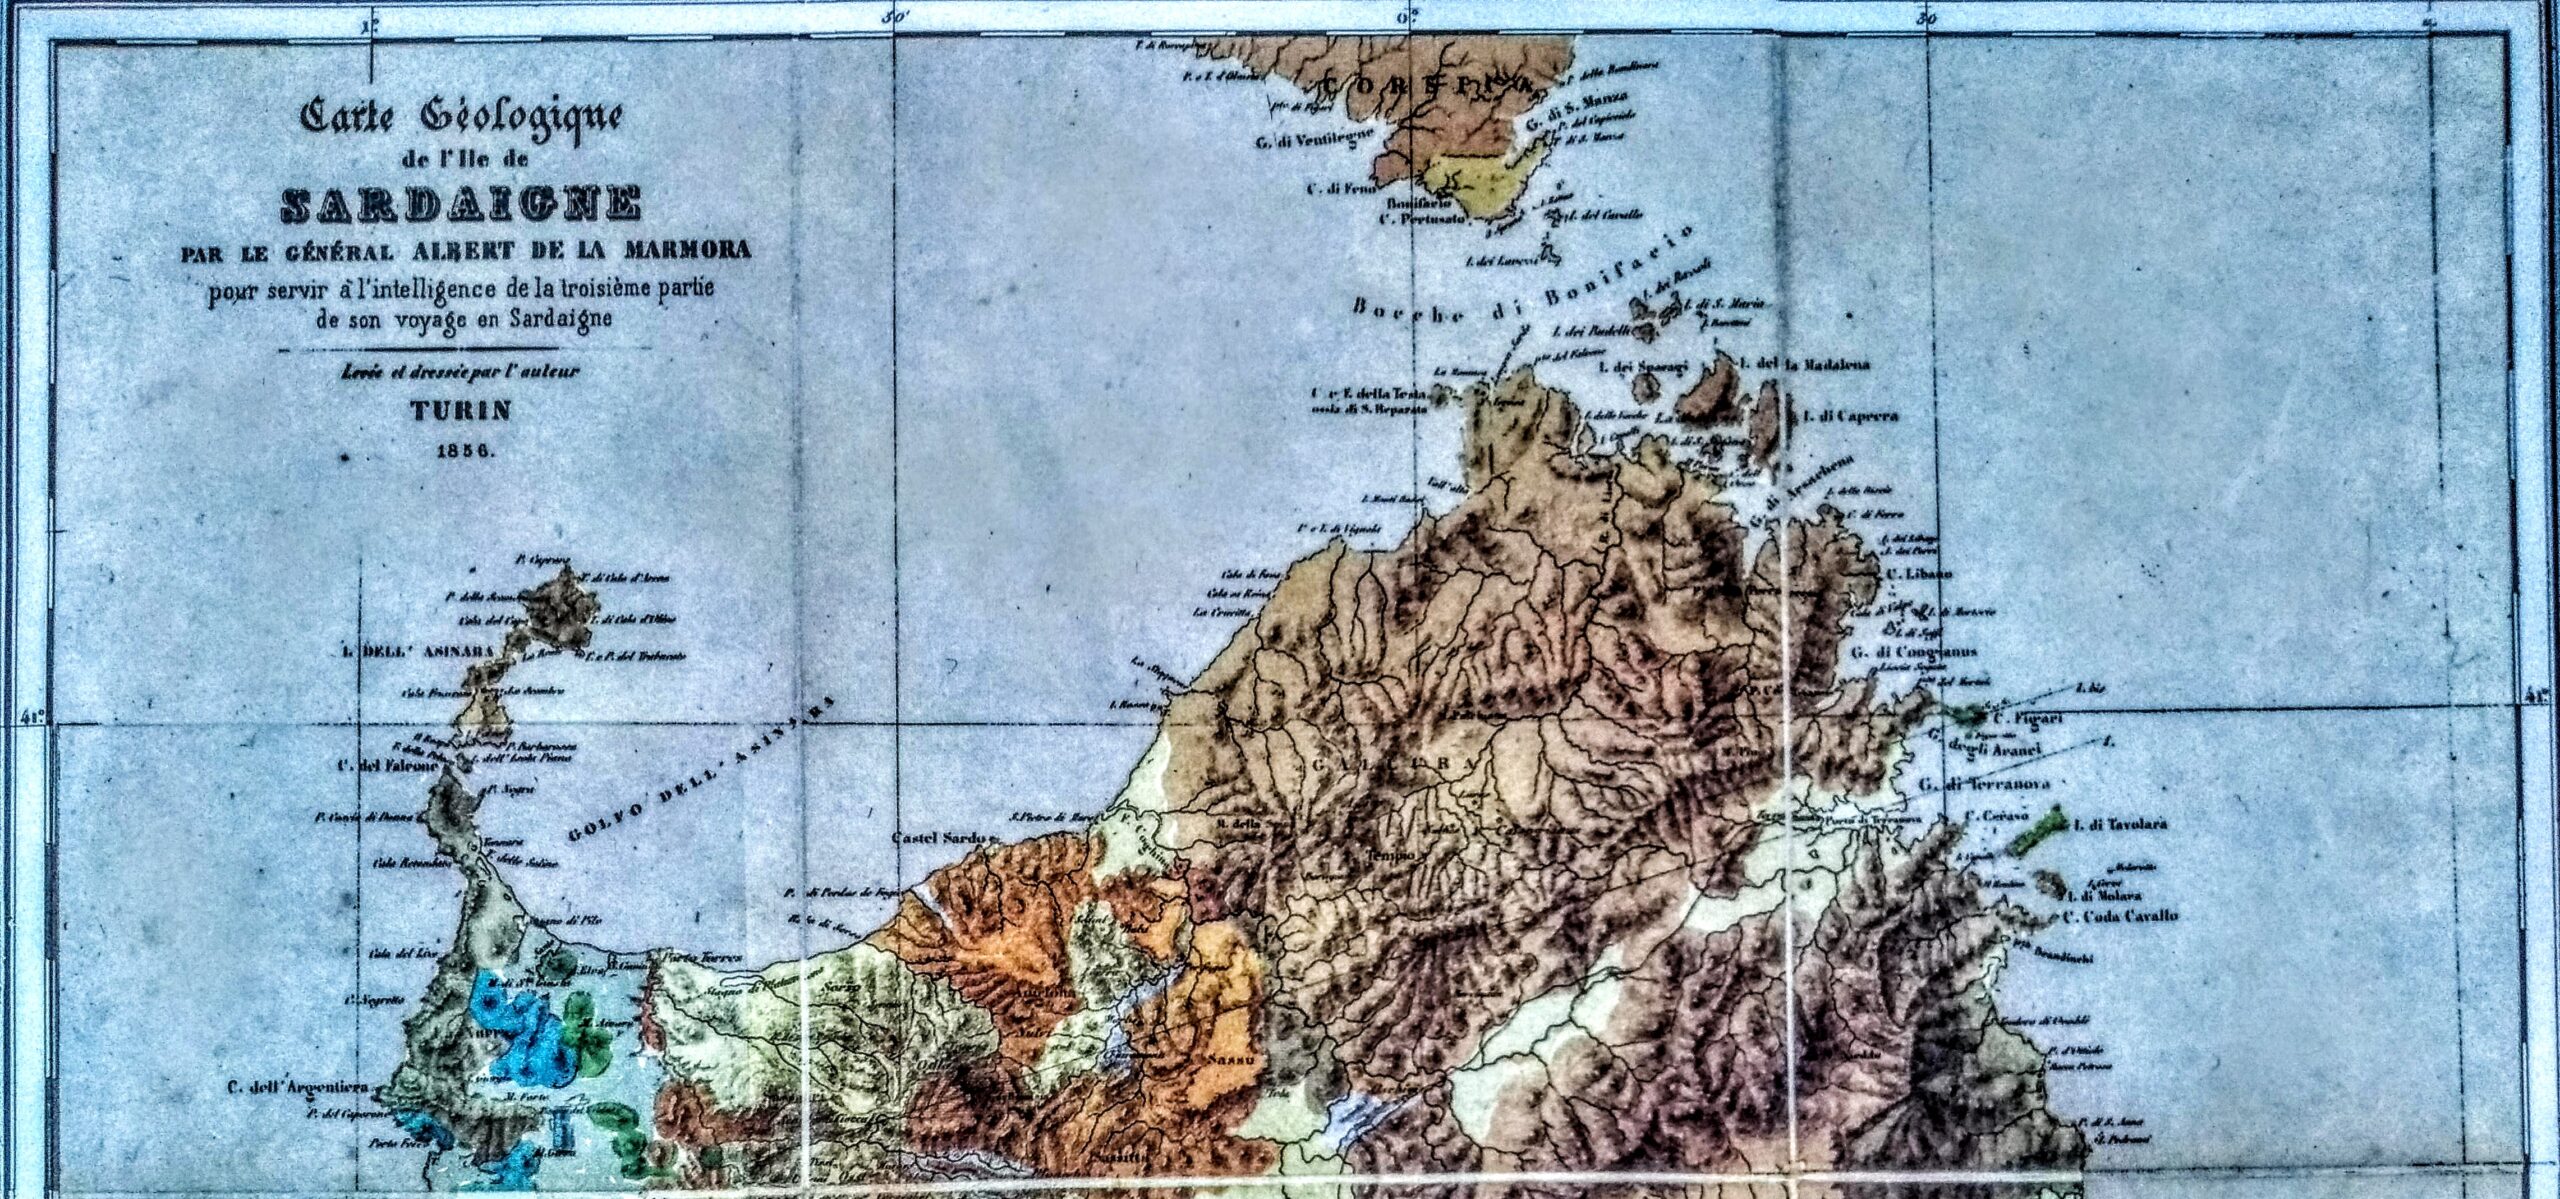 1856 - De La Marmora, prima carta geologica della Sardegna